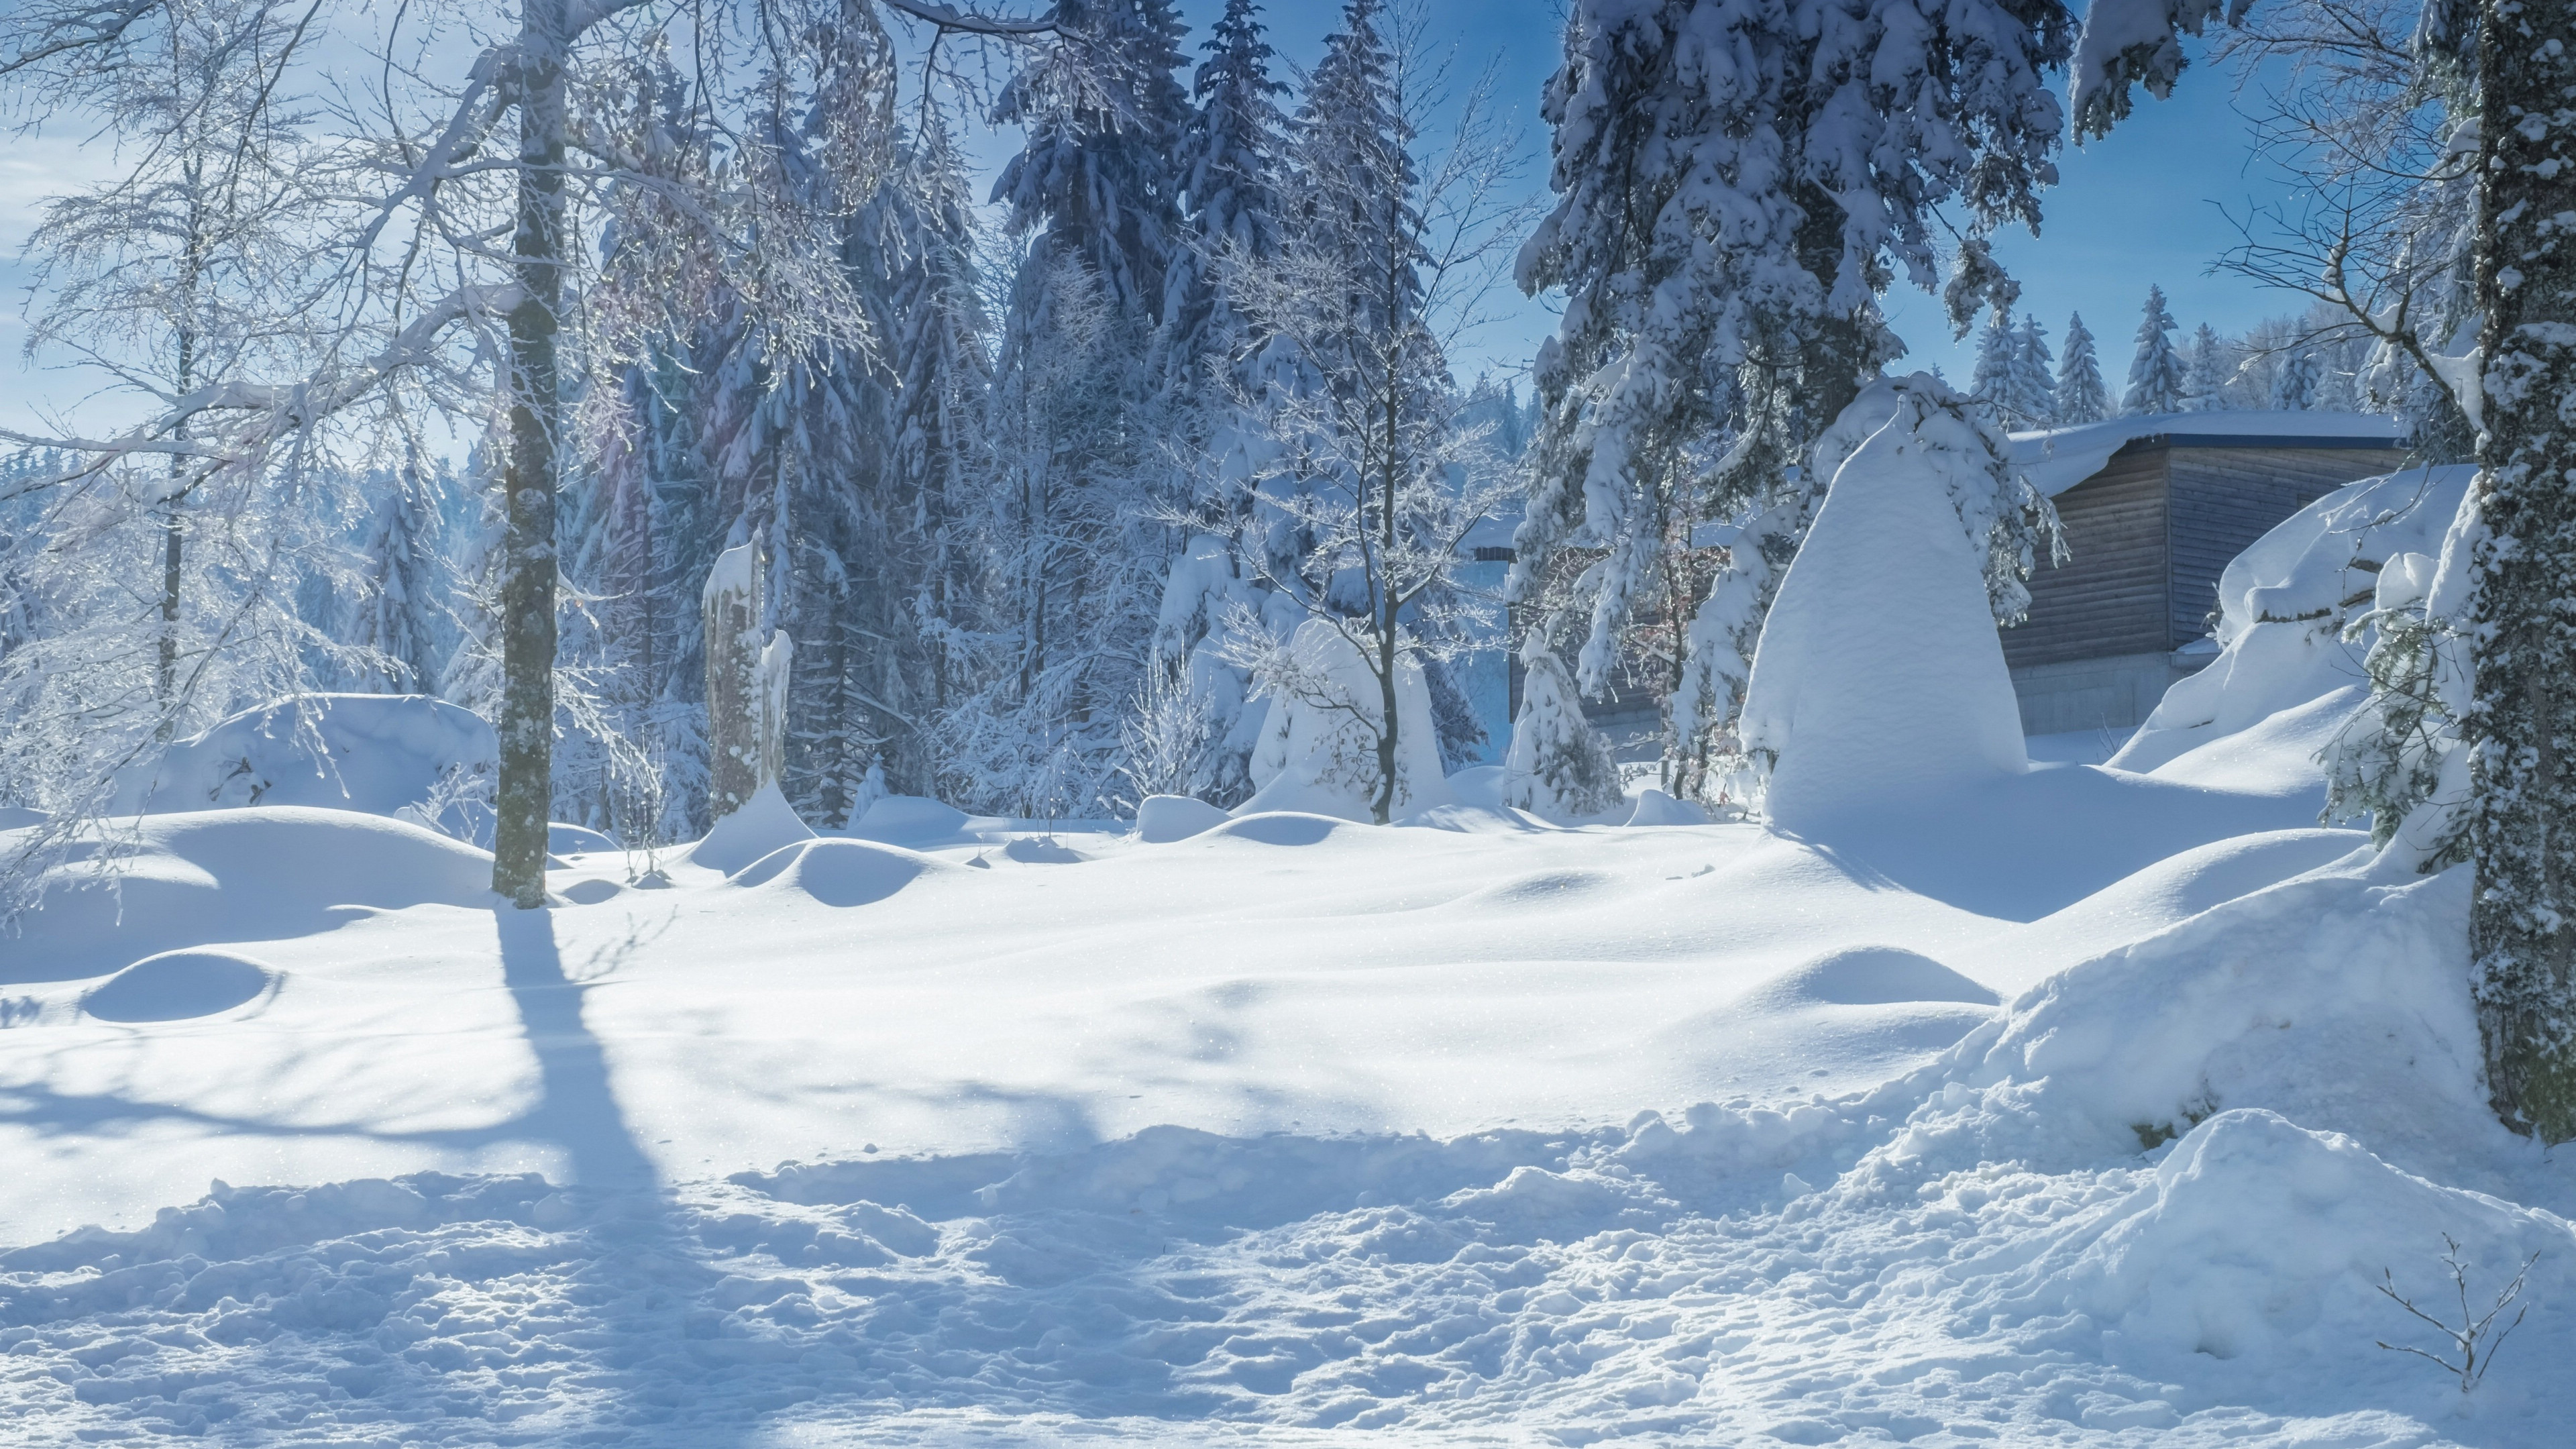 冬季皑皑白雪风景桌面壁纸